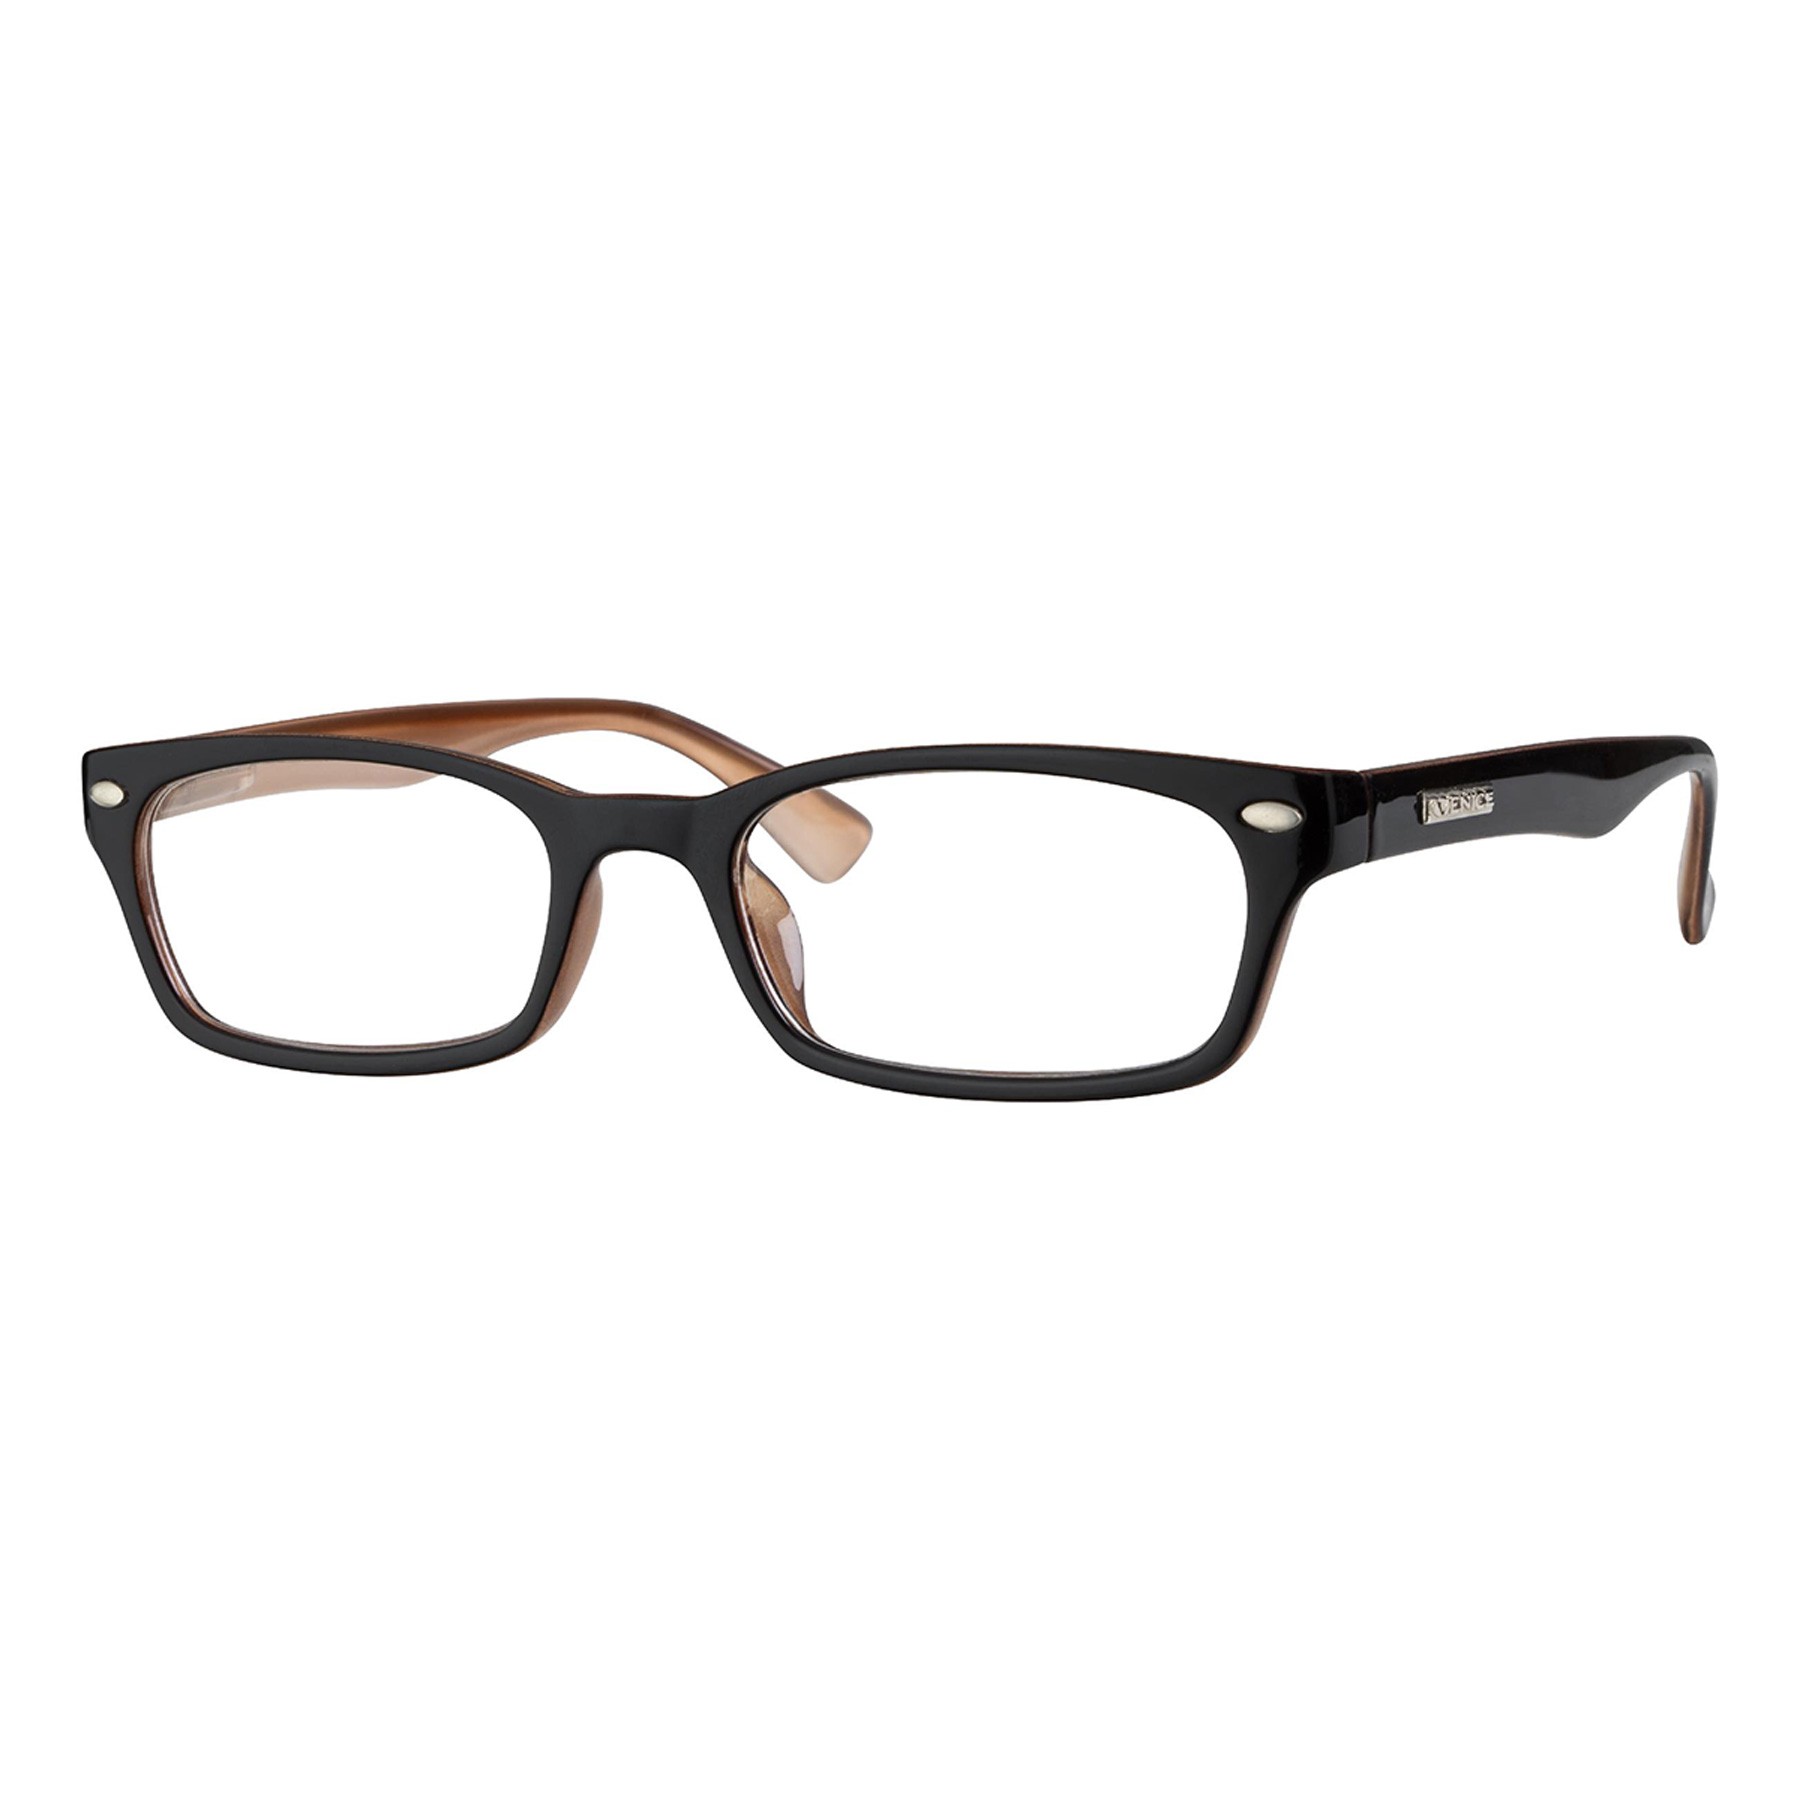 Iaview gafa de presbicia mini WAY marrón +1,50